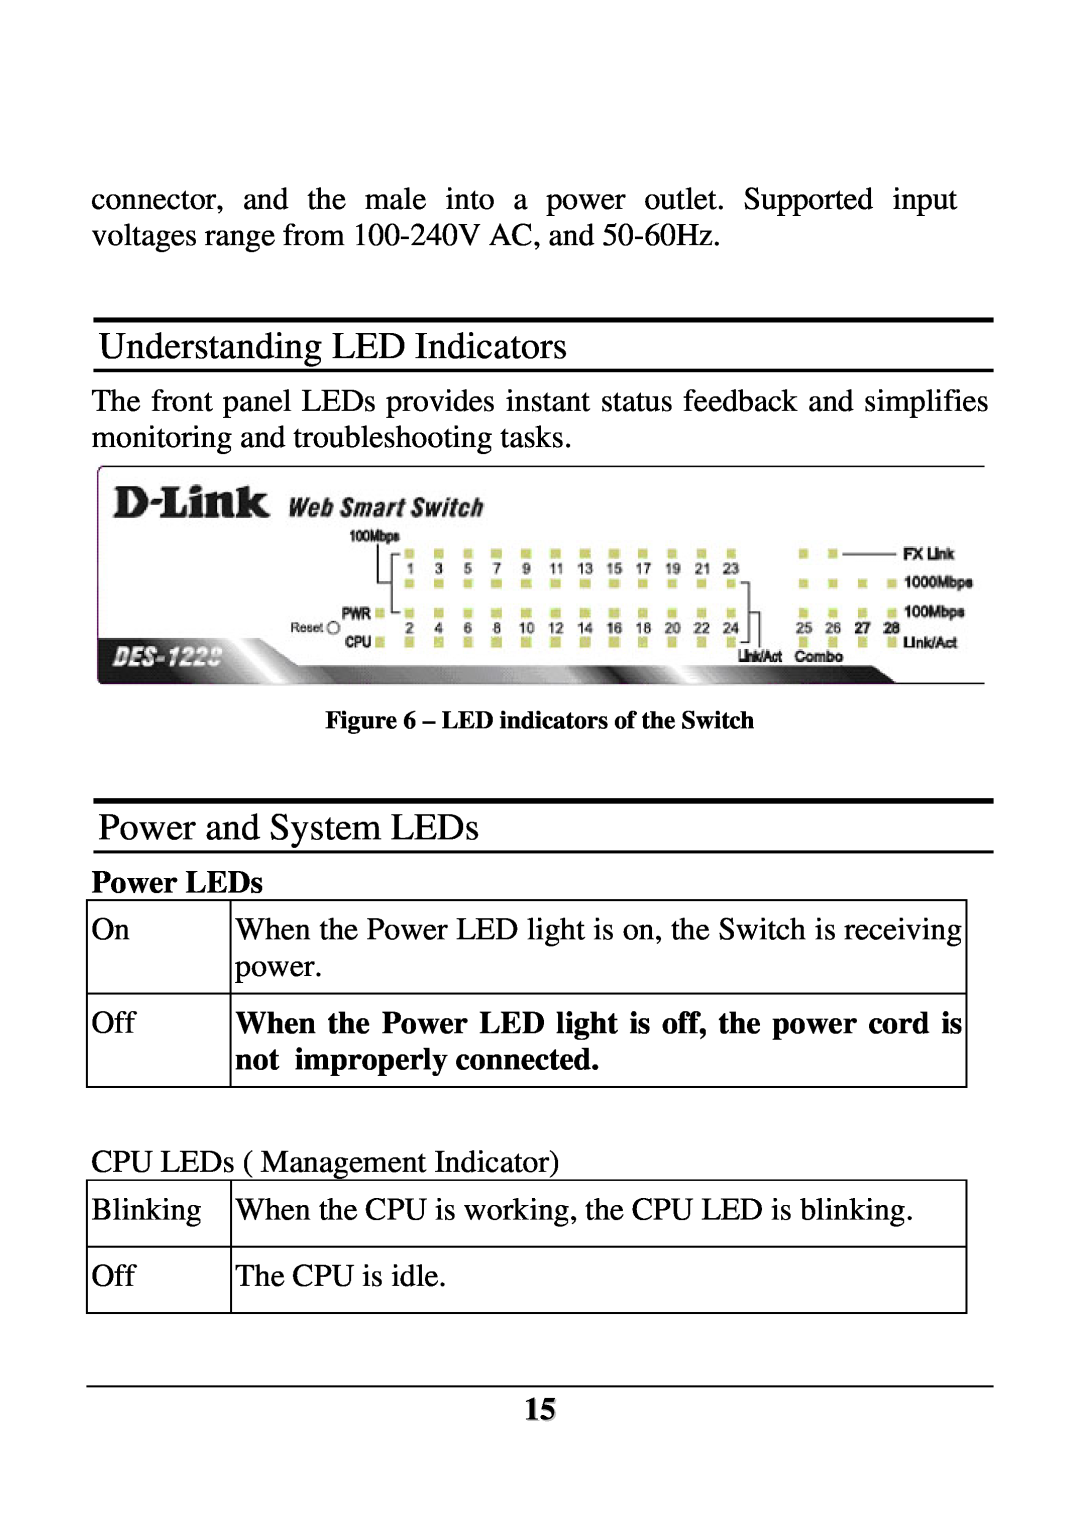 D-Link DES-1228 user manual Understanding LED Indicators, Power and System LEDs, Power LEDs 